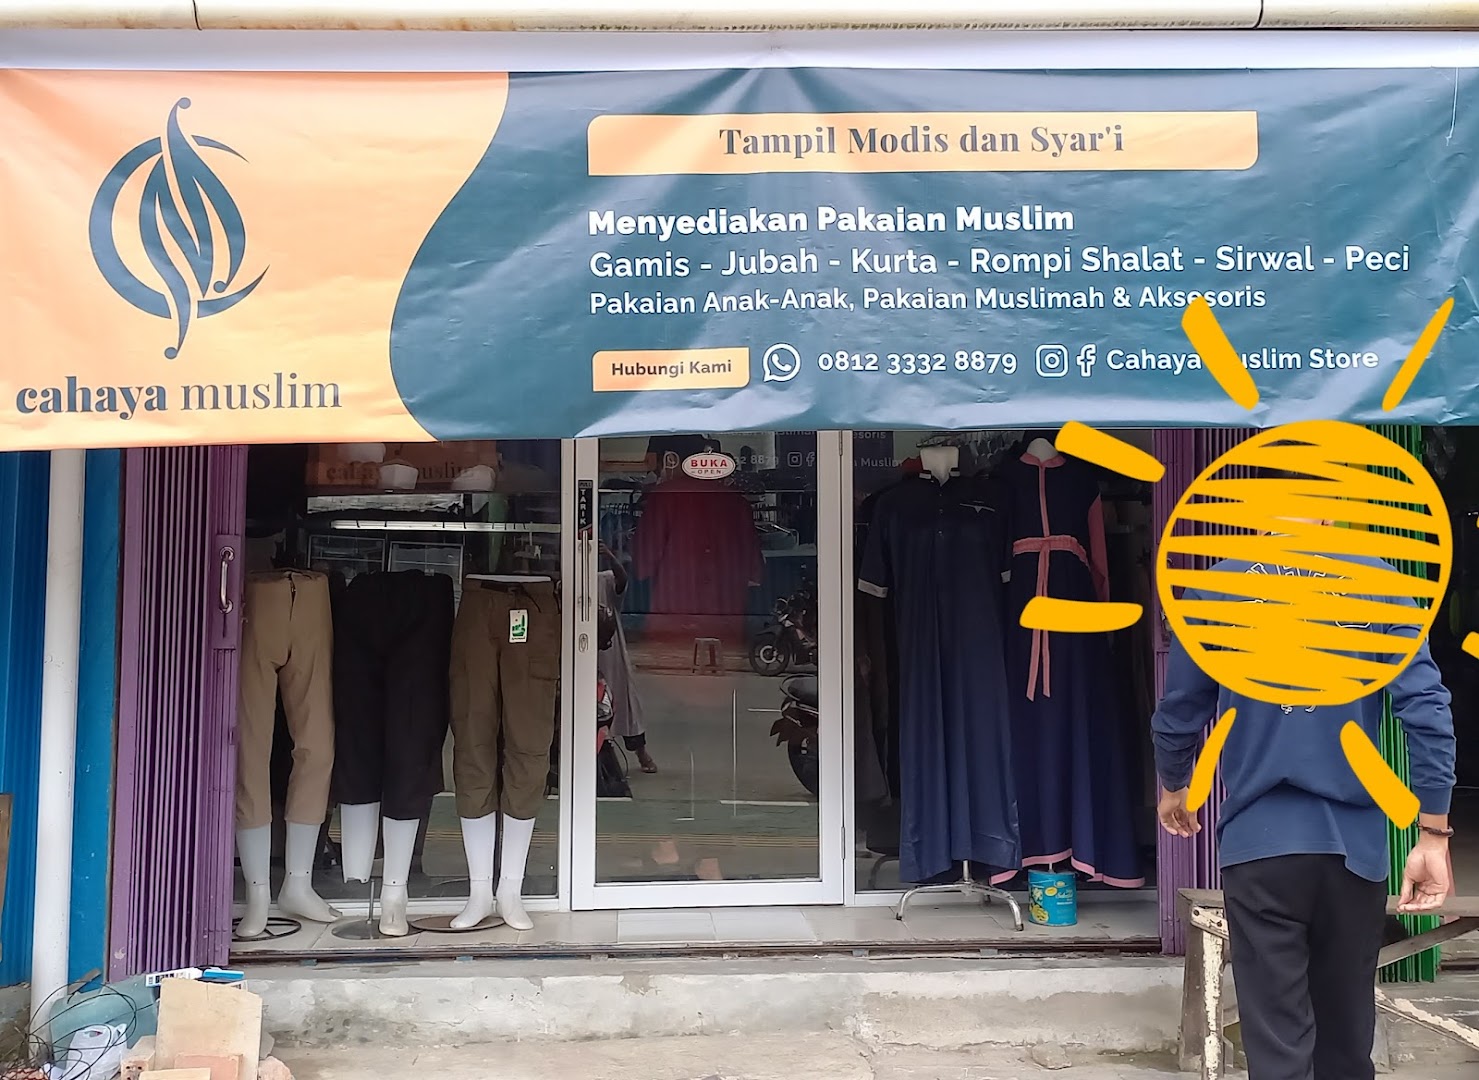 Cahaya Muslim Store Photo